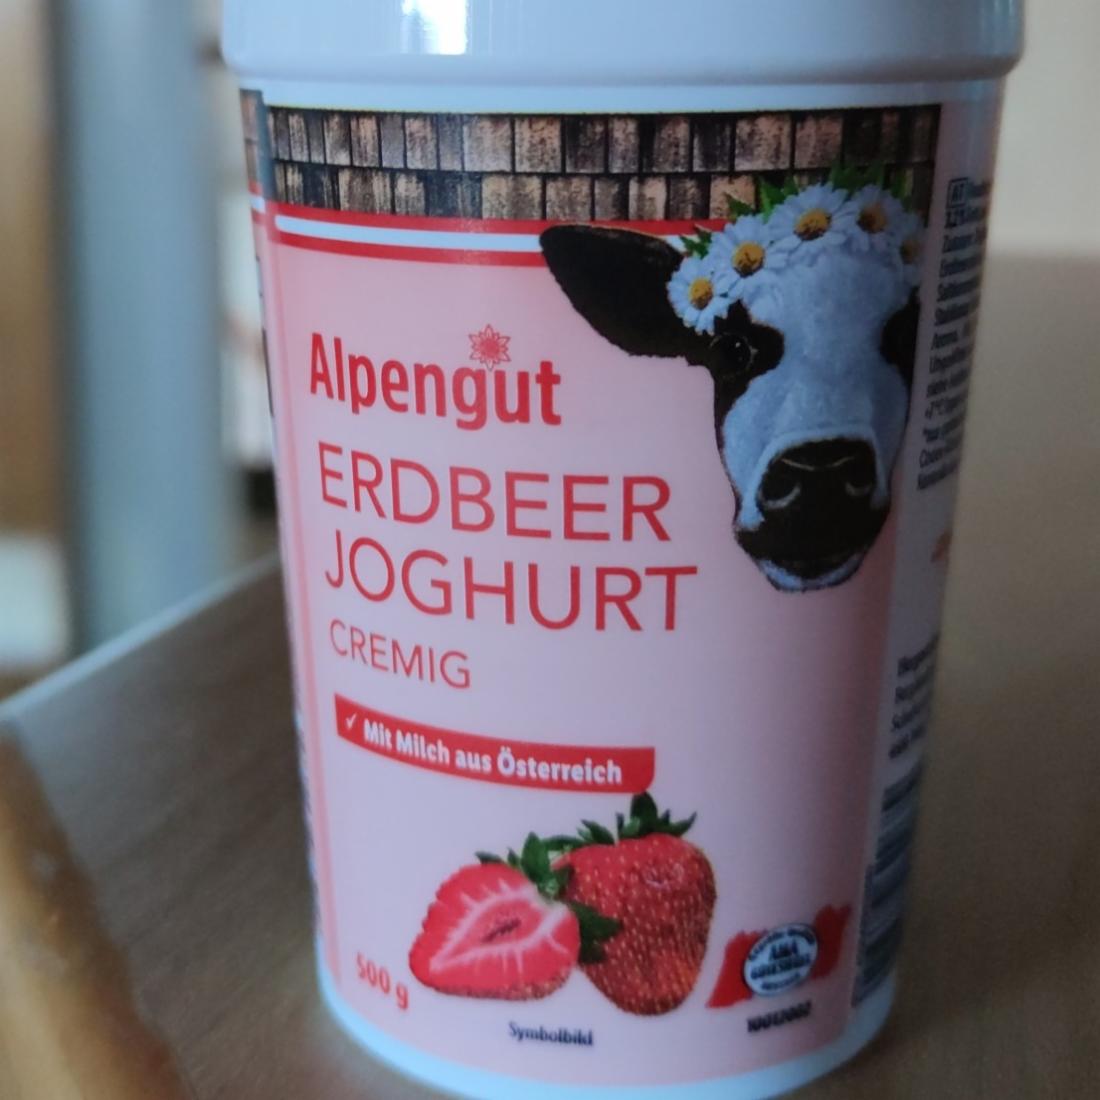 Fotografie - Erdbeer Joghurt cremig Alpengut